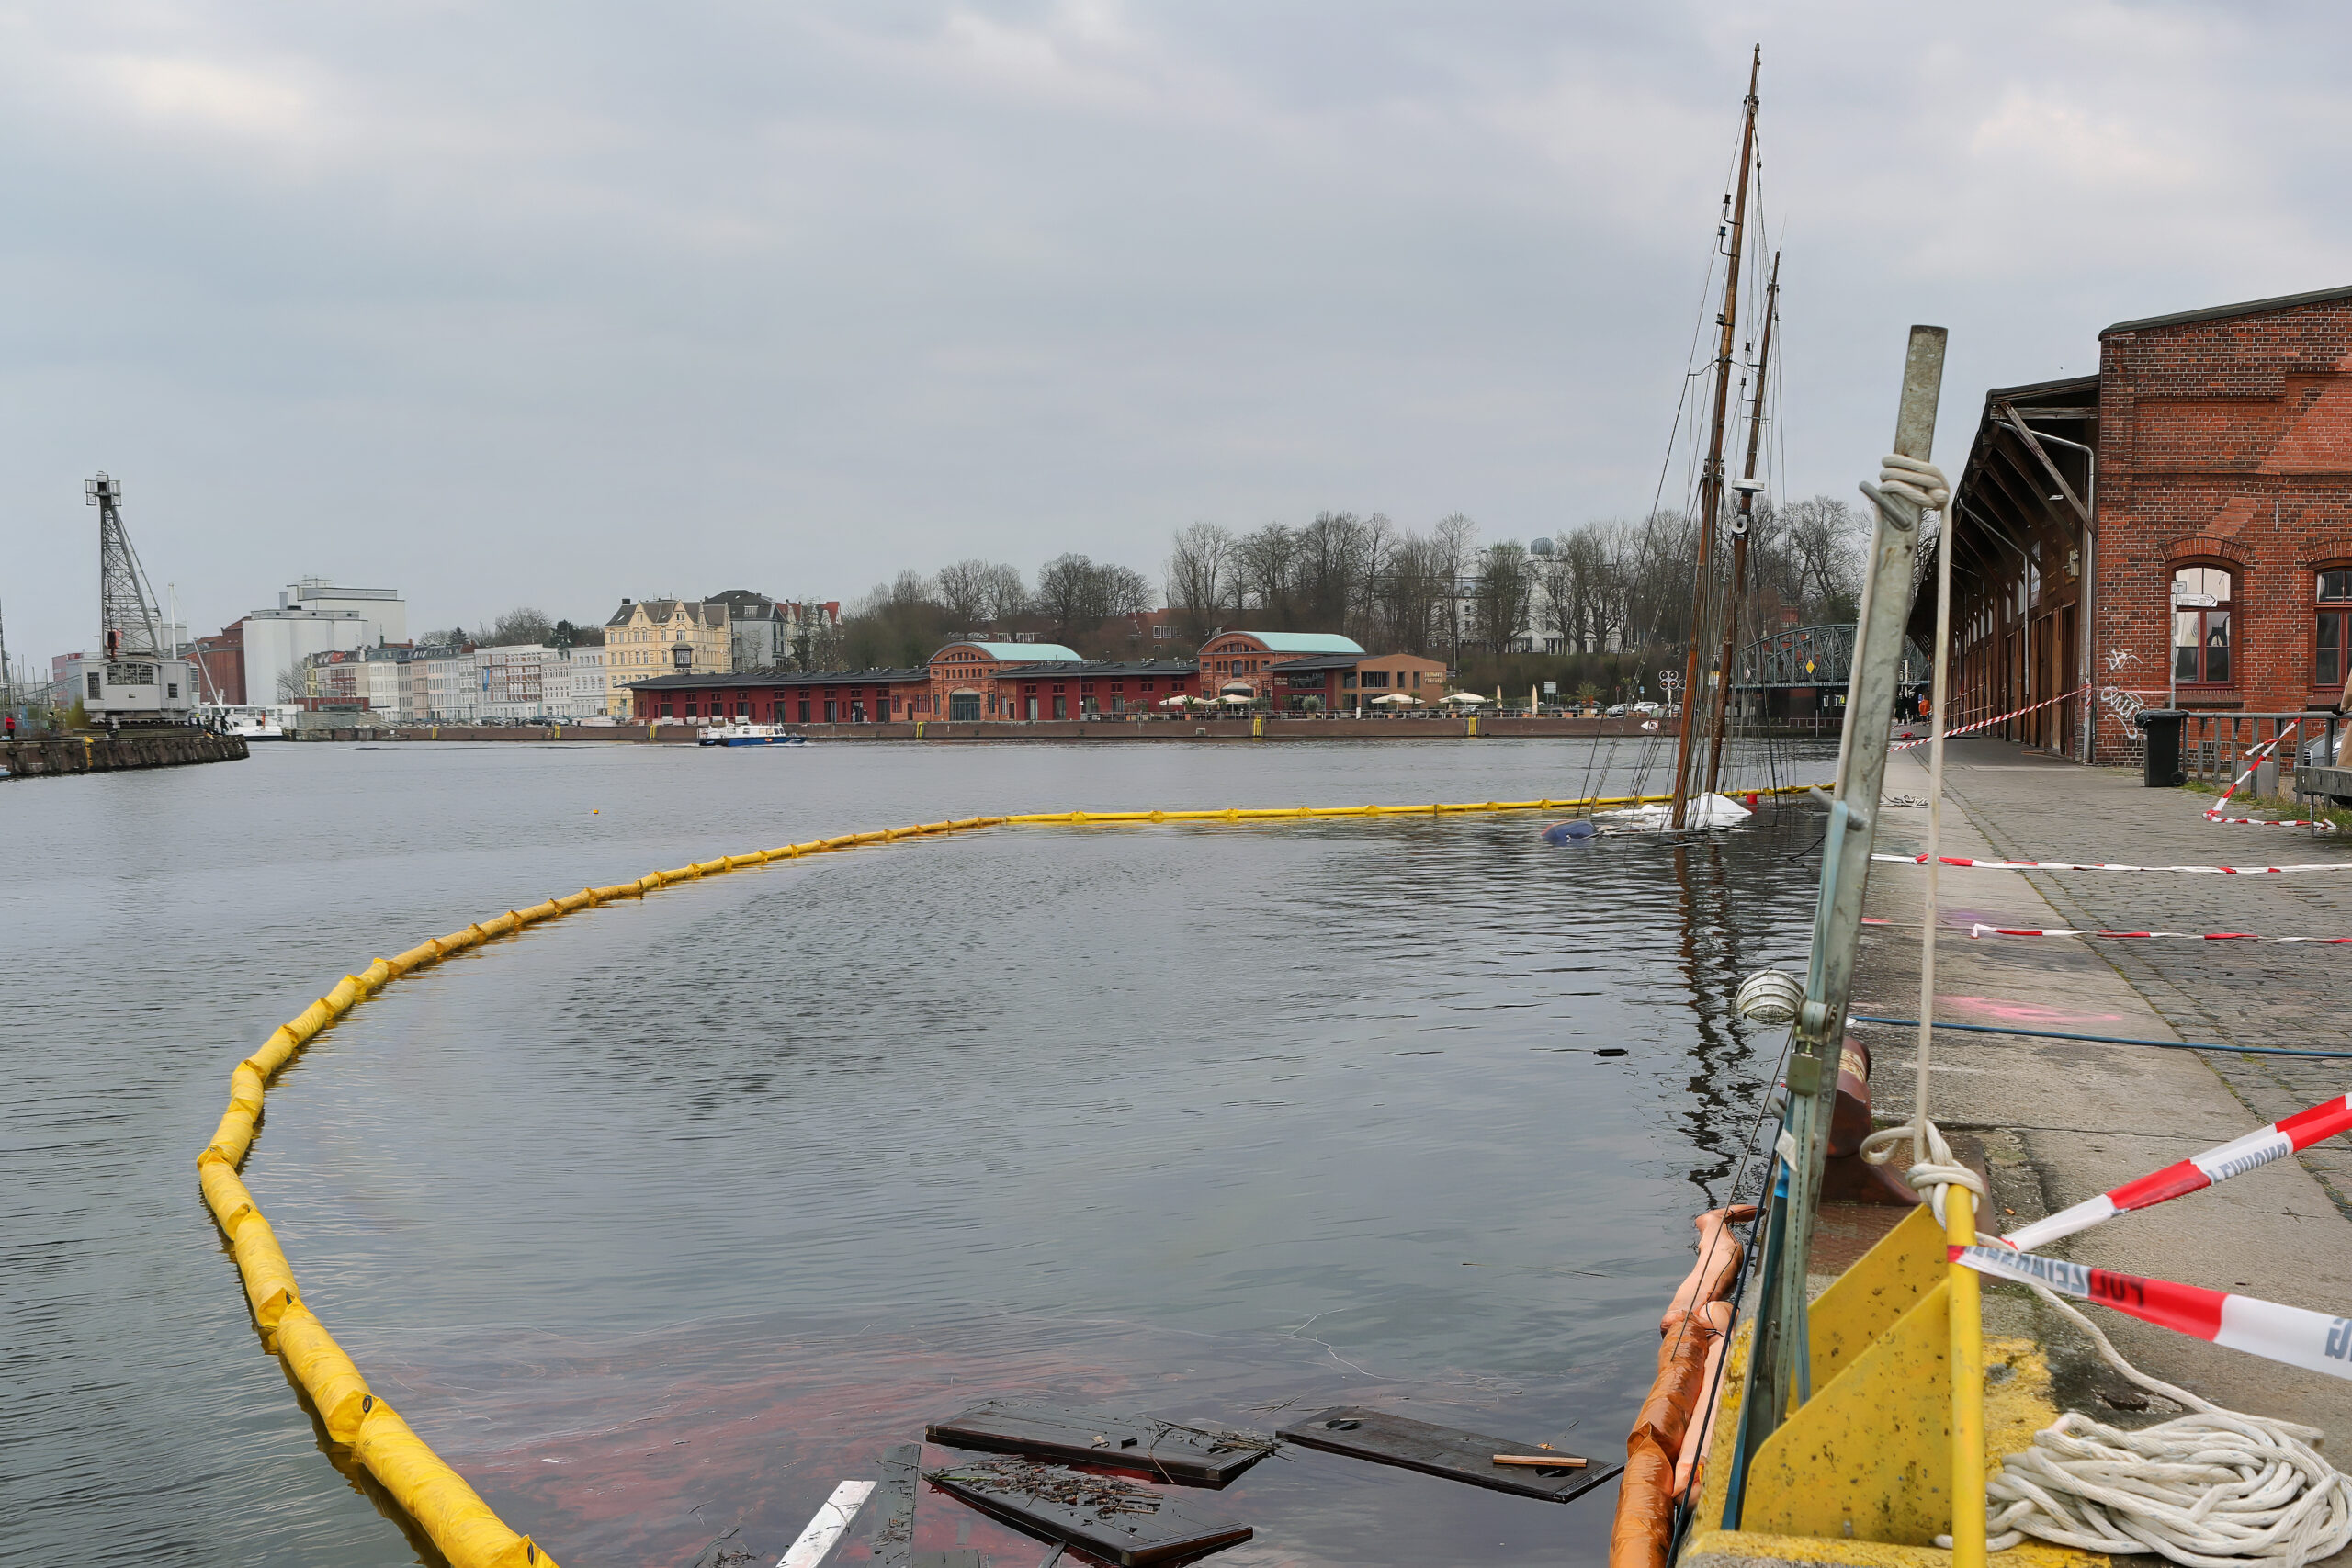 Der Hafen von Lübeck ist zu sehen. Das Schiff ist komplett weg, komplett unter Wasser